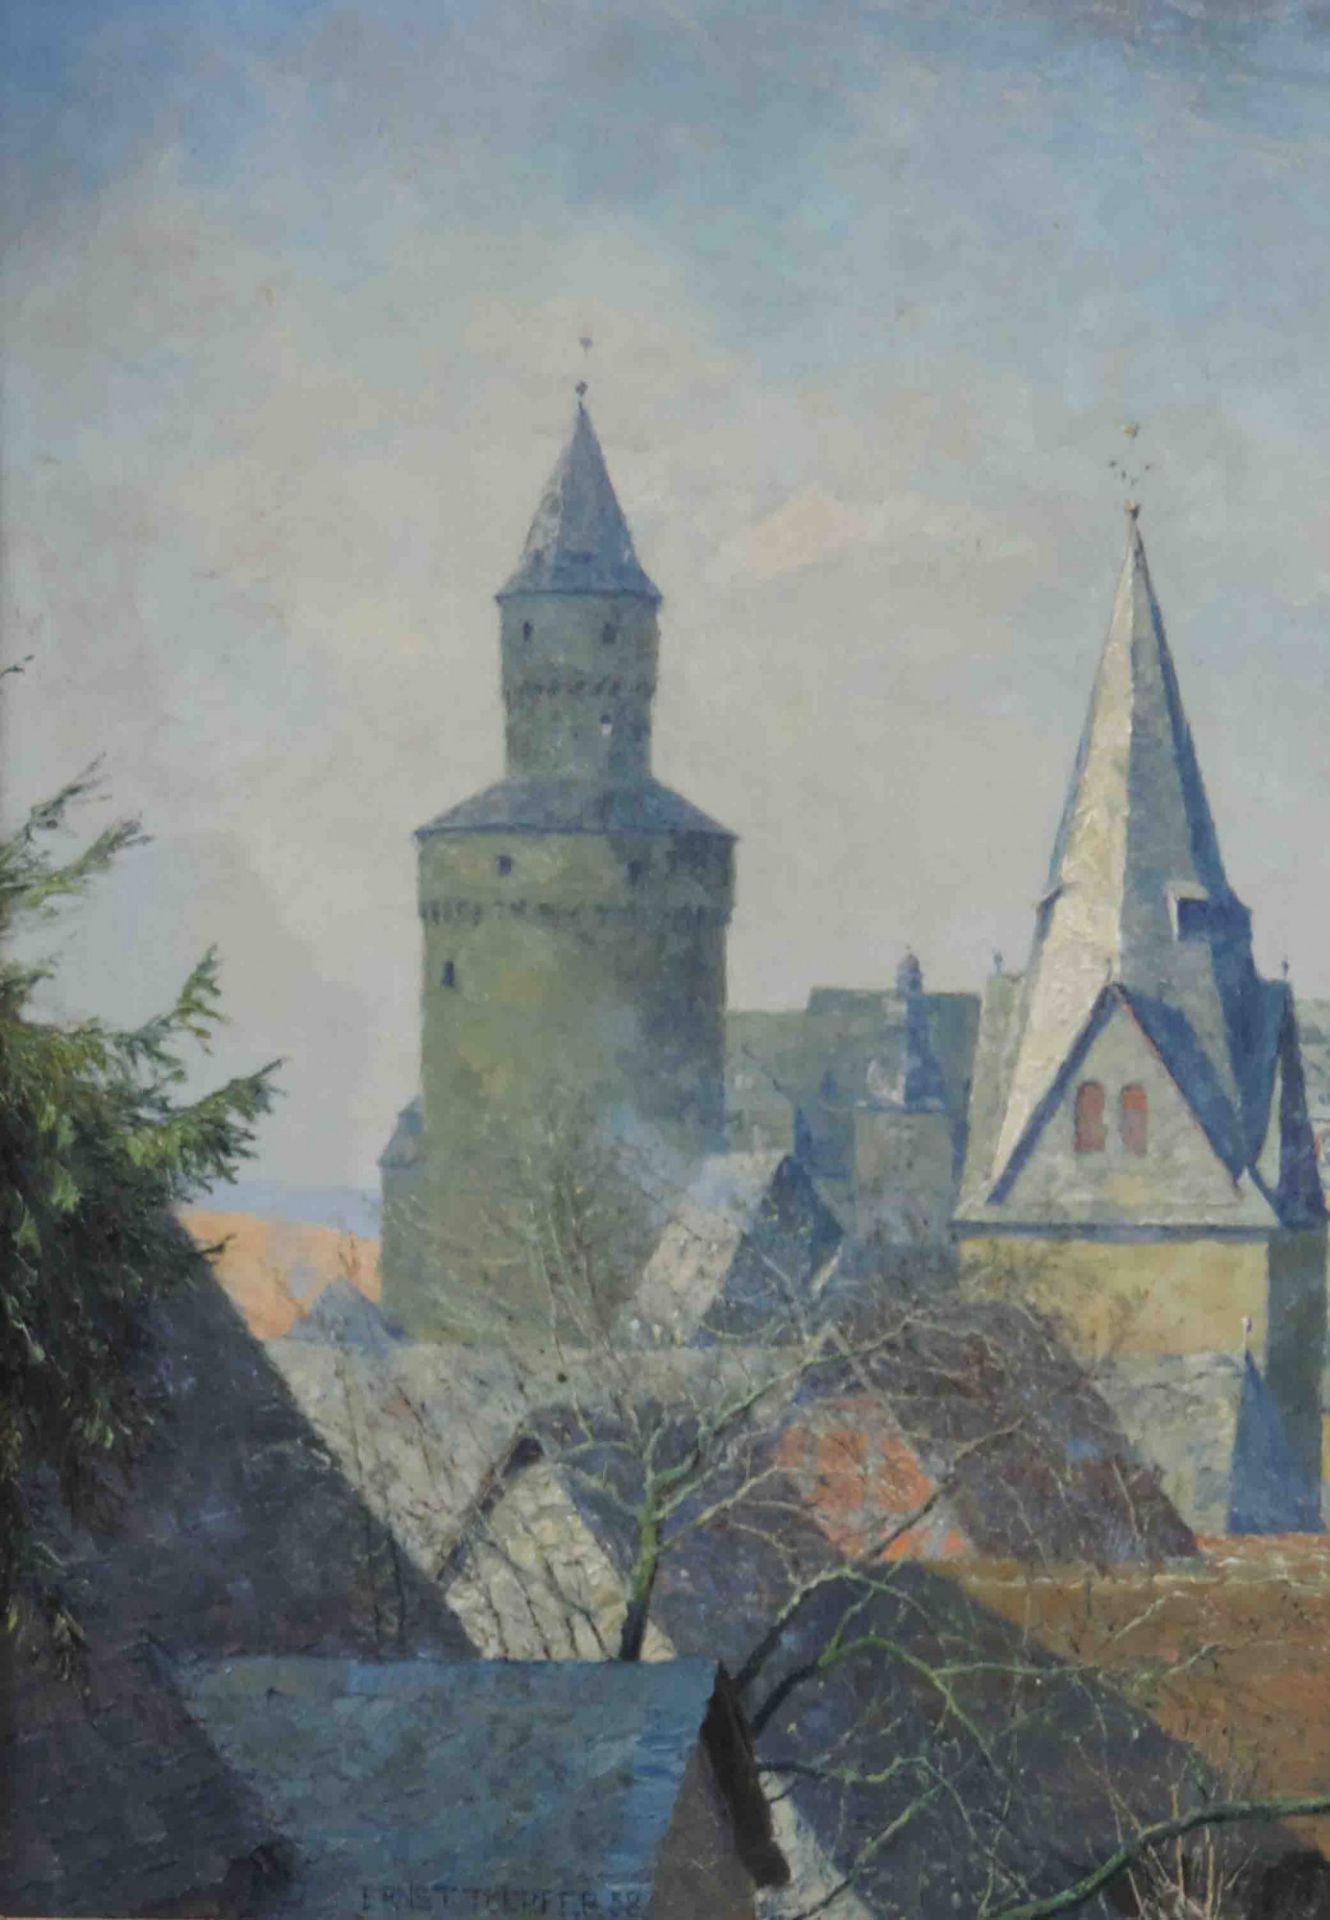 Ernst TOEPFER (1877 - 1955). Idstein im Taunus. Altstadt mit Hexenturm, 193860 cm x 70 cm. - Bild 4 aus 10